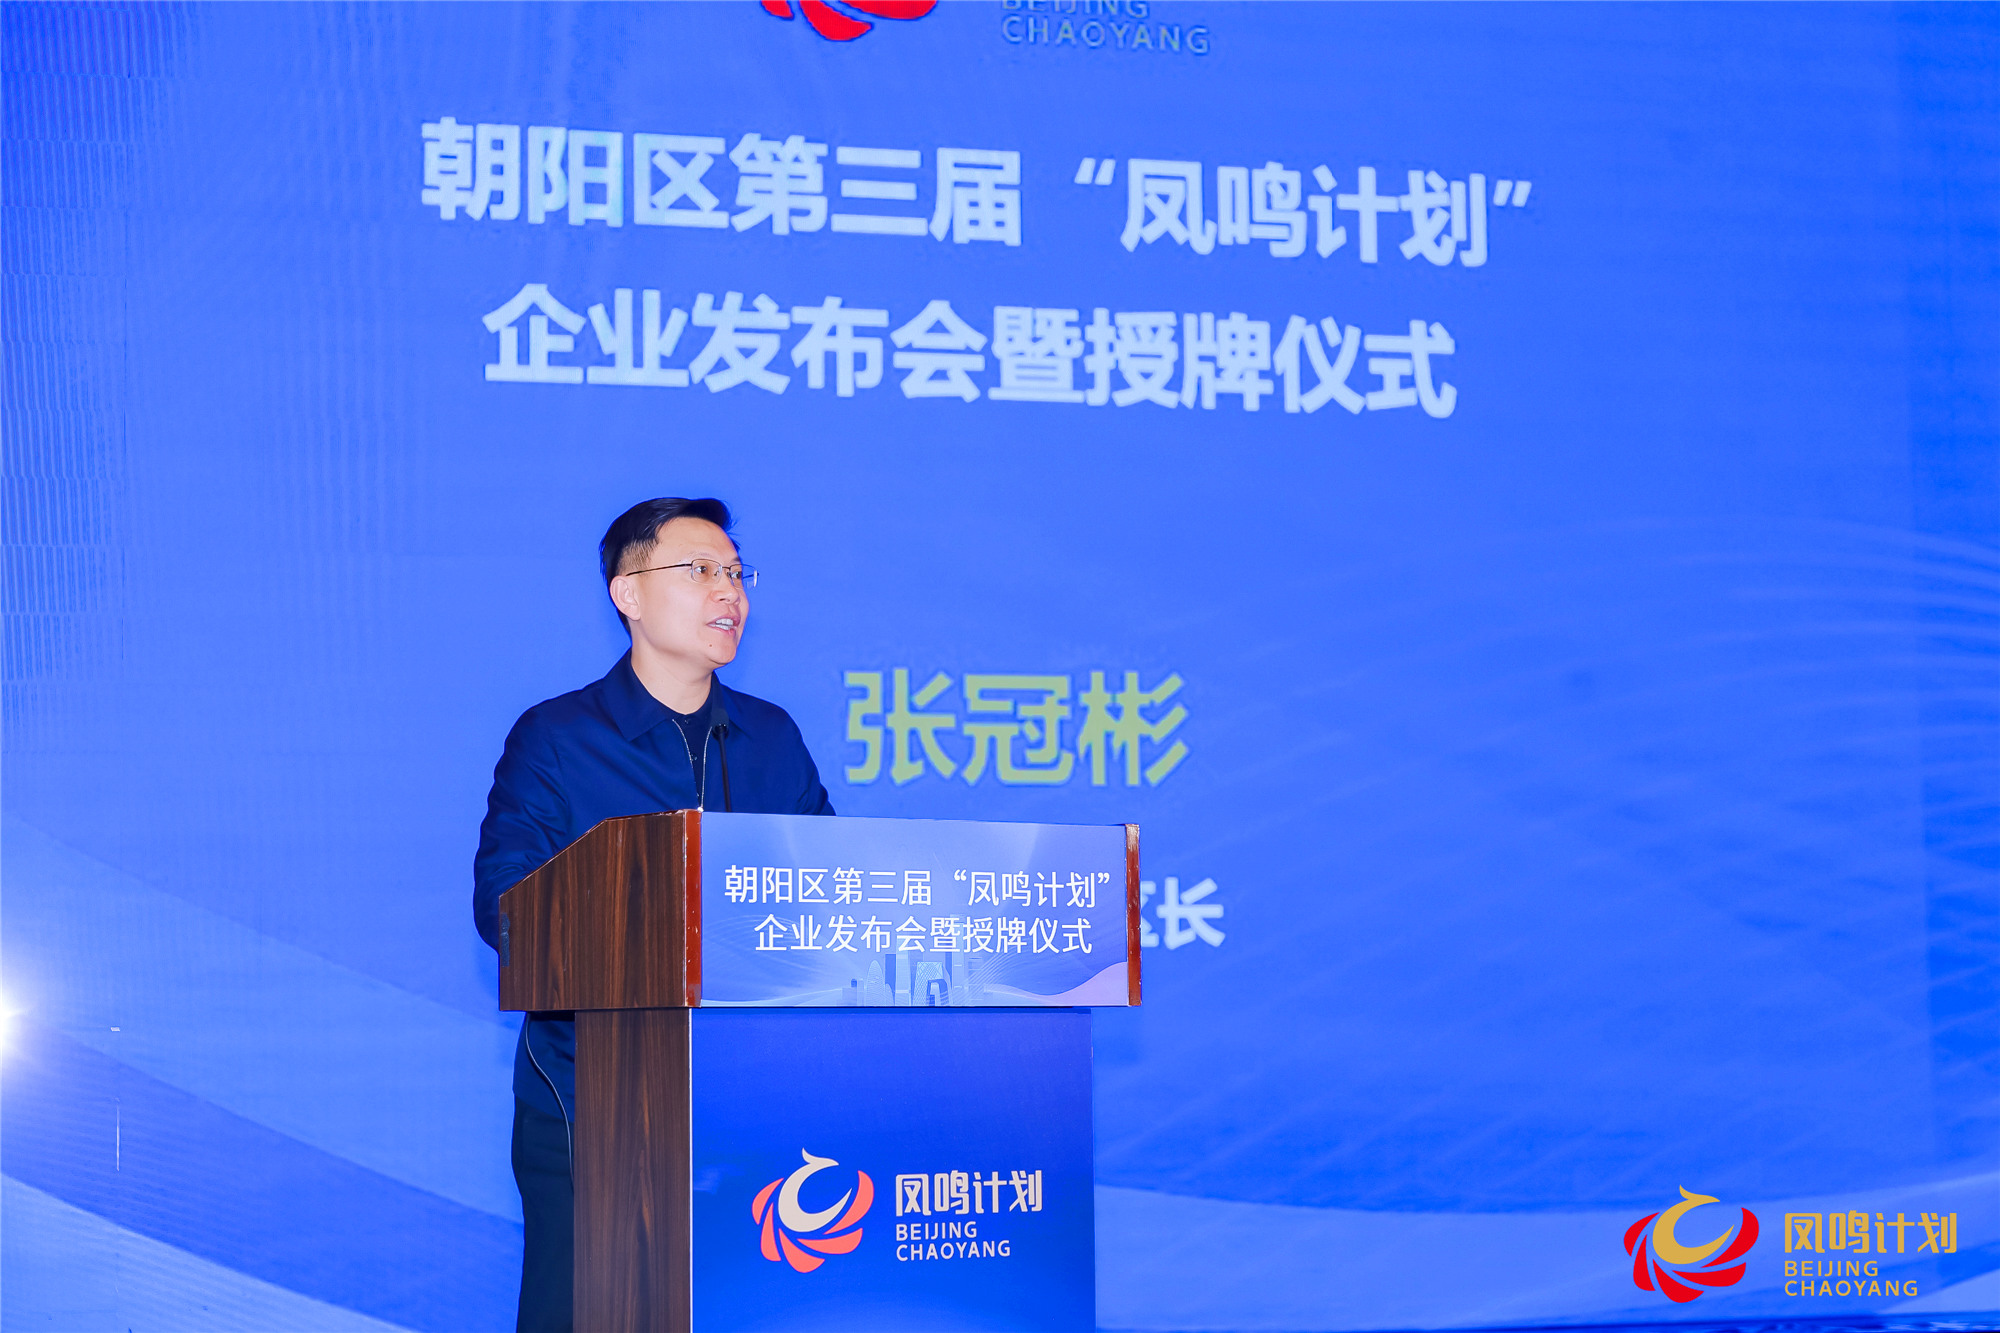 北京朝陽舉辦第三屆「鳳鳴計劃」企業發佈會暨授牌儀式  259家企業入圍